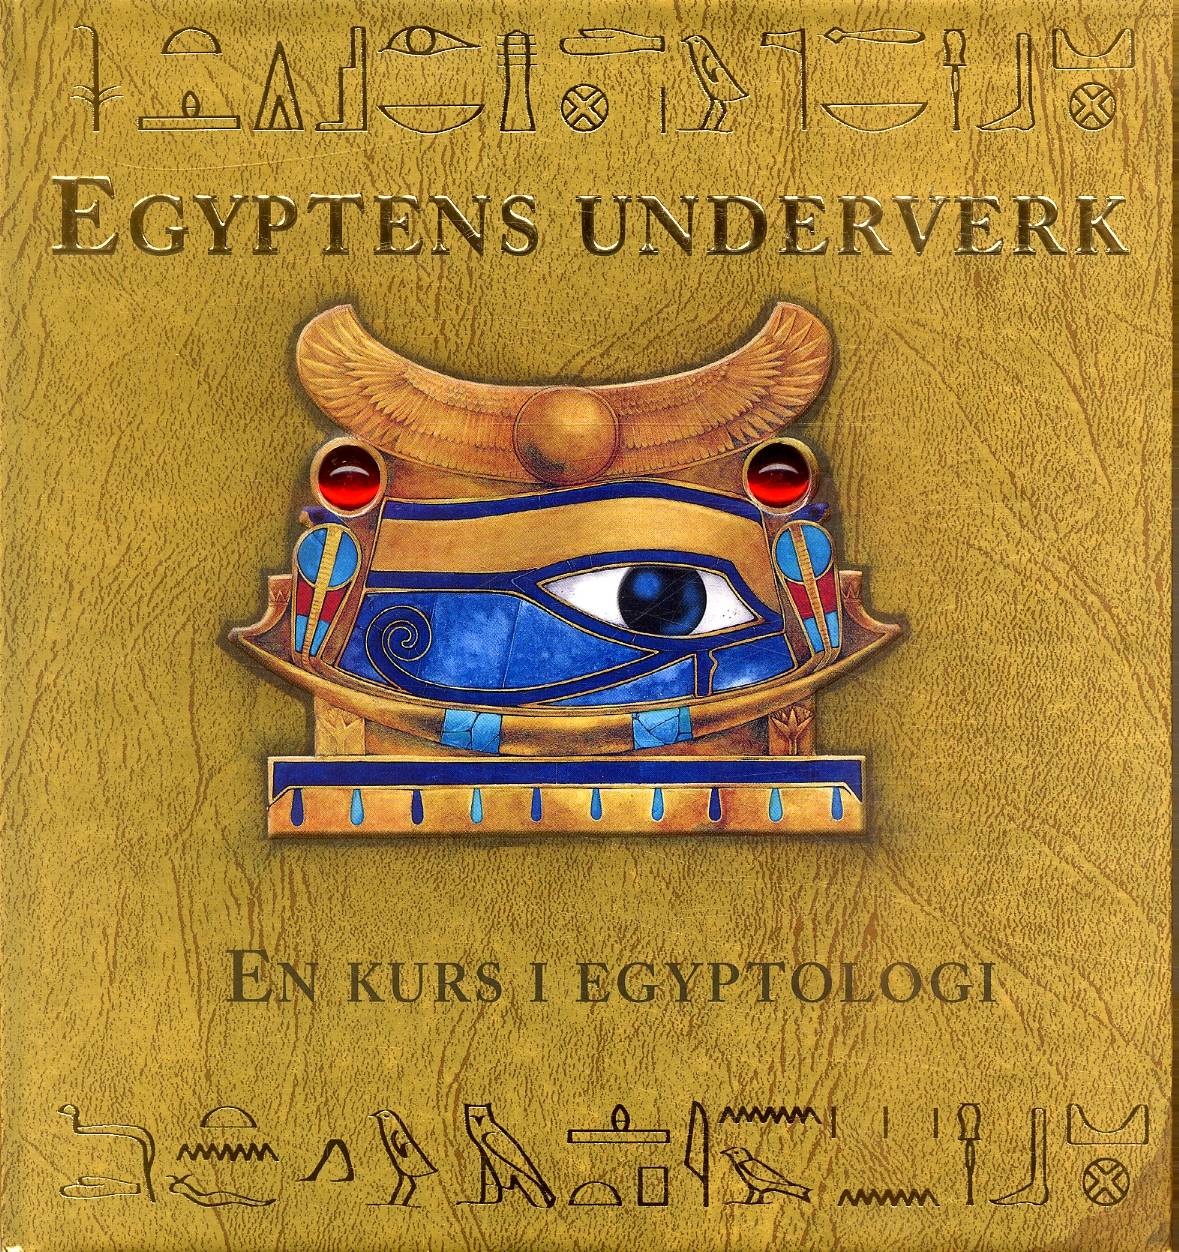 Egyptens underverk : En kurs i egyptologi